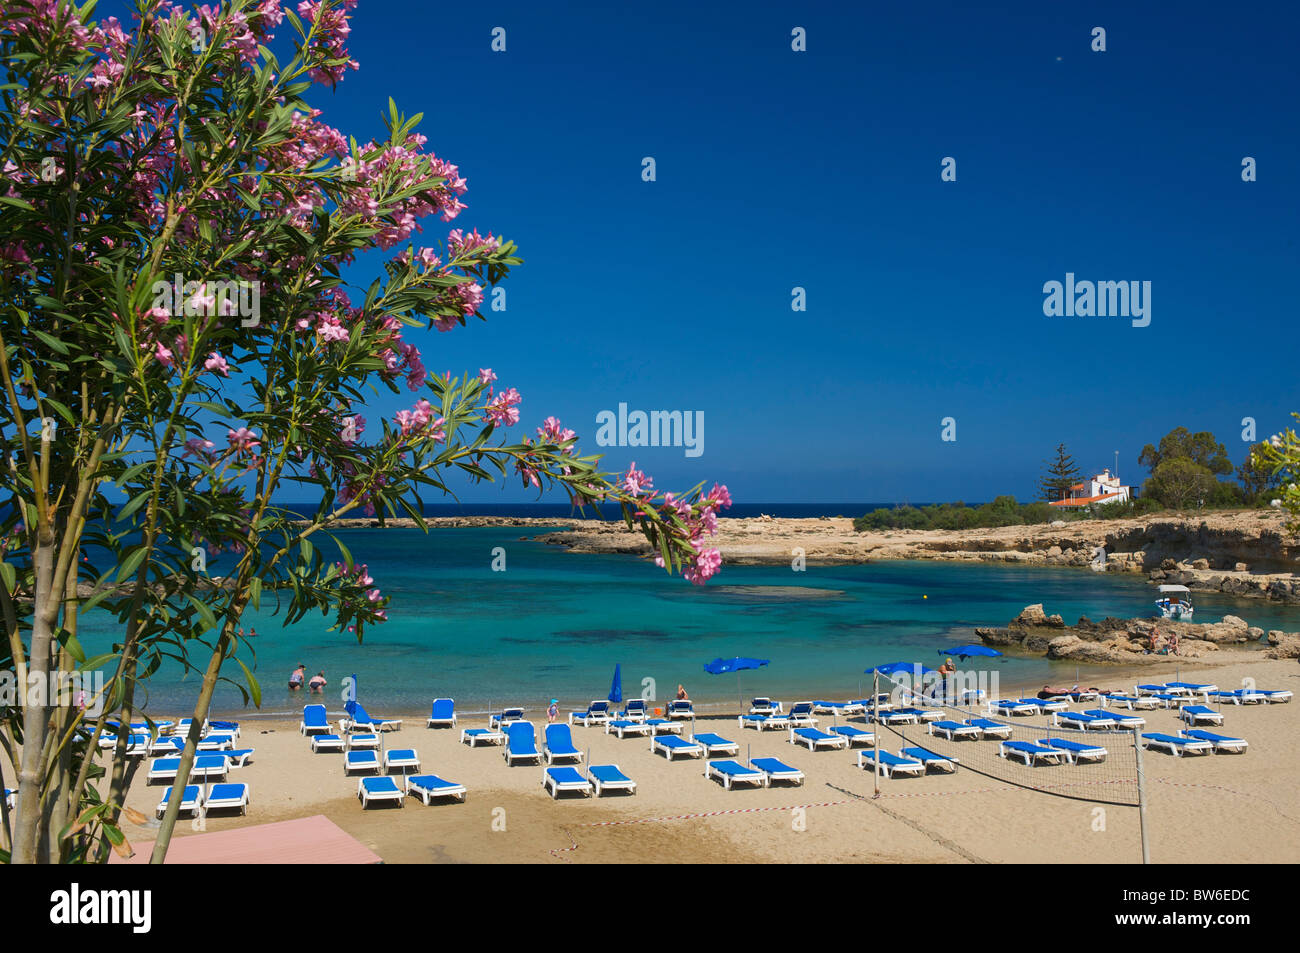 Playa de Protaras, Ayia Napa, República de Chipre Foto de stock